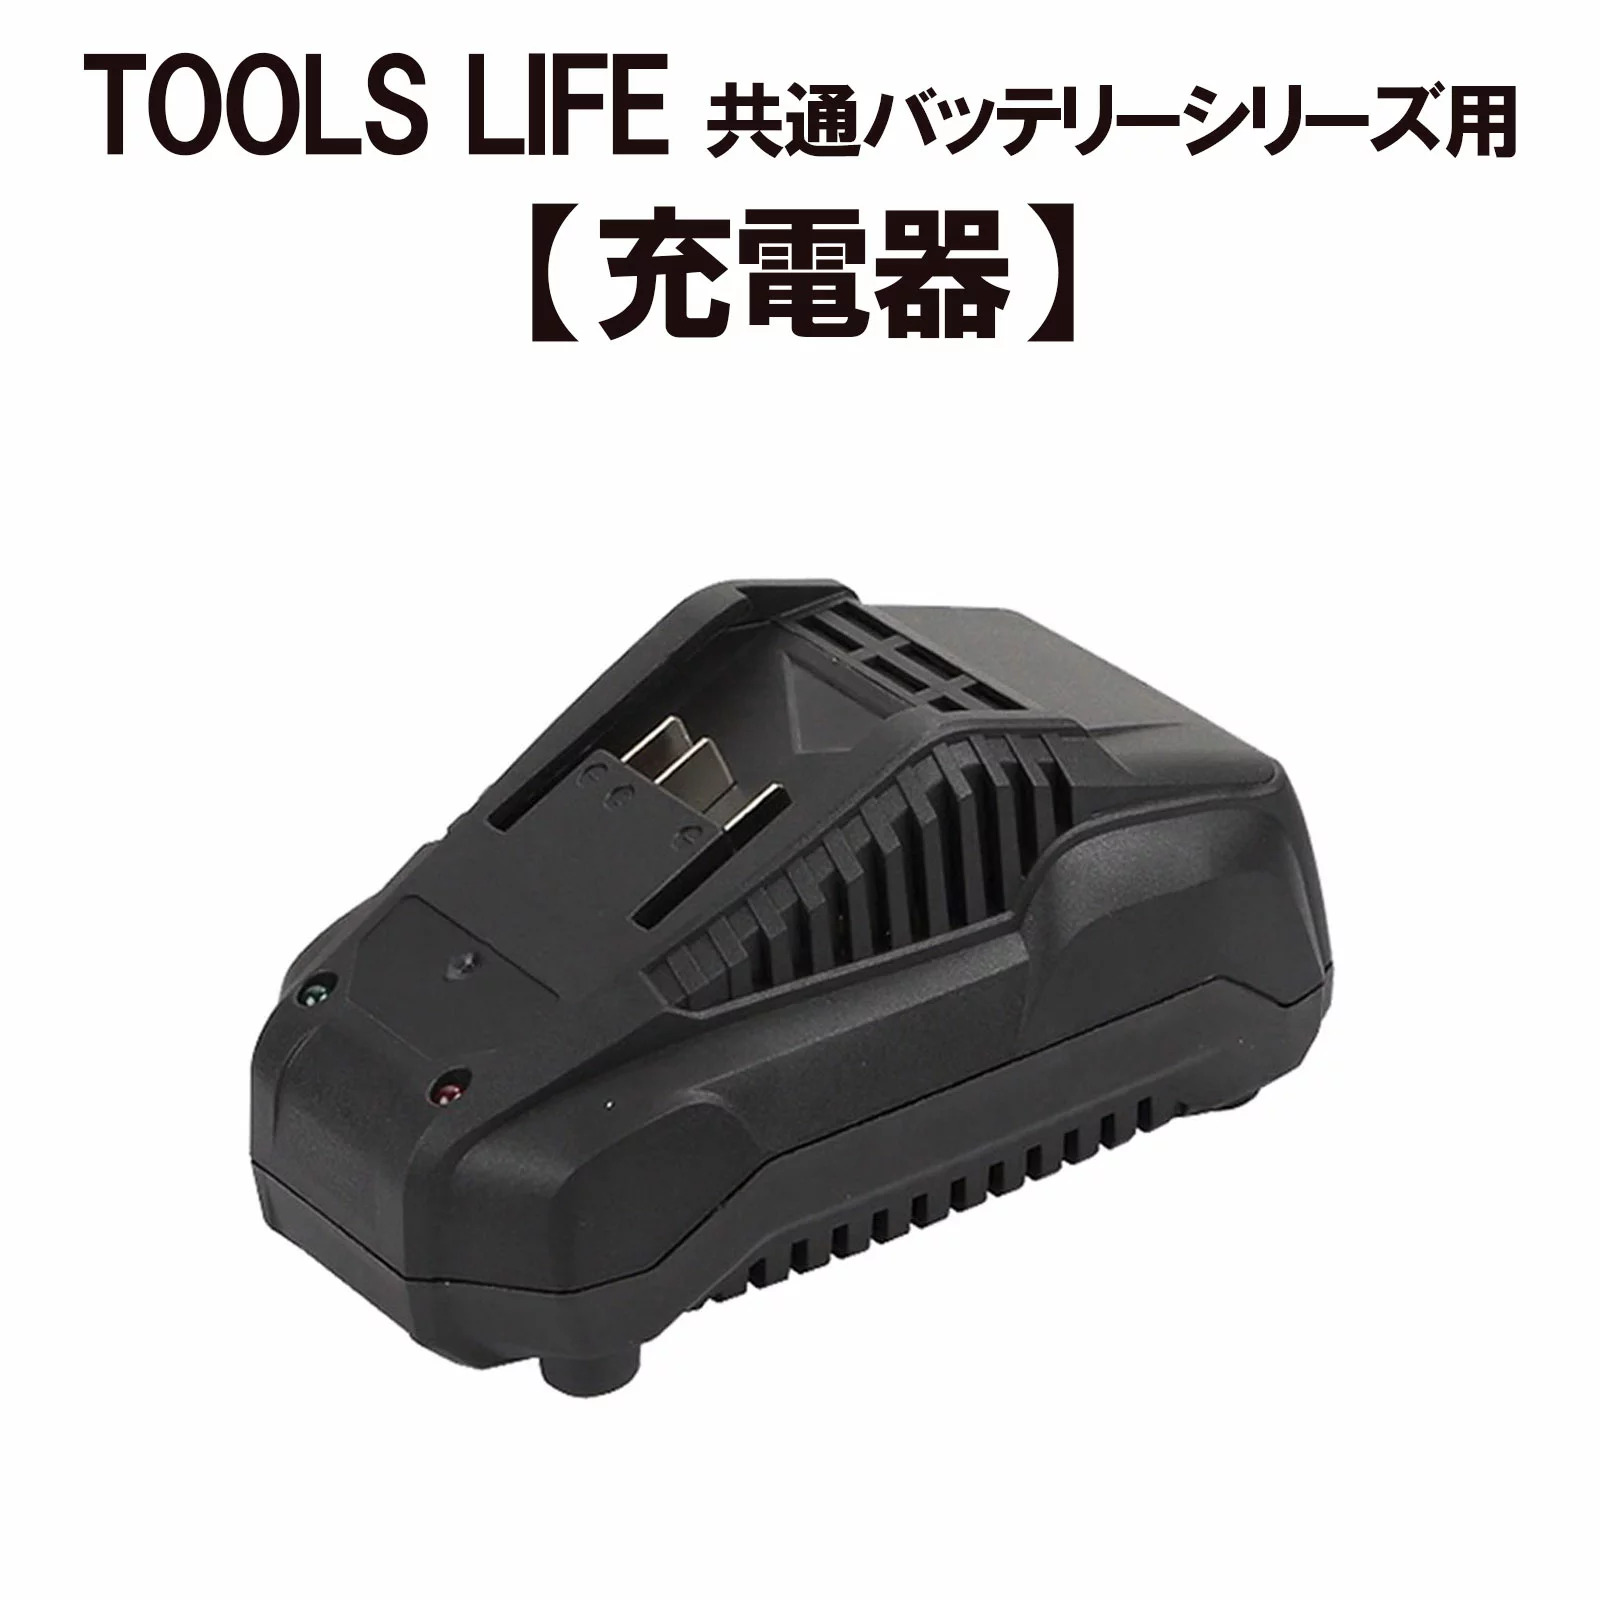 日本機器通販 / TOOLS LIFE バッテリー専用充電器 LY777-2150- 2400